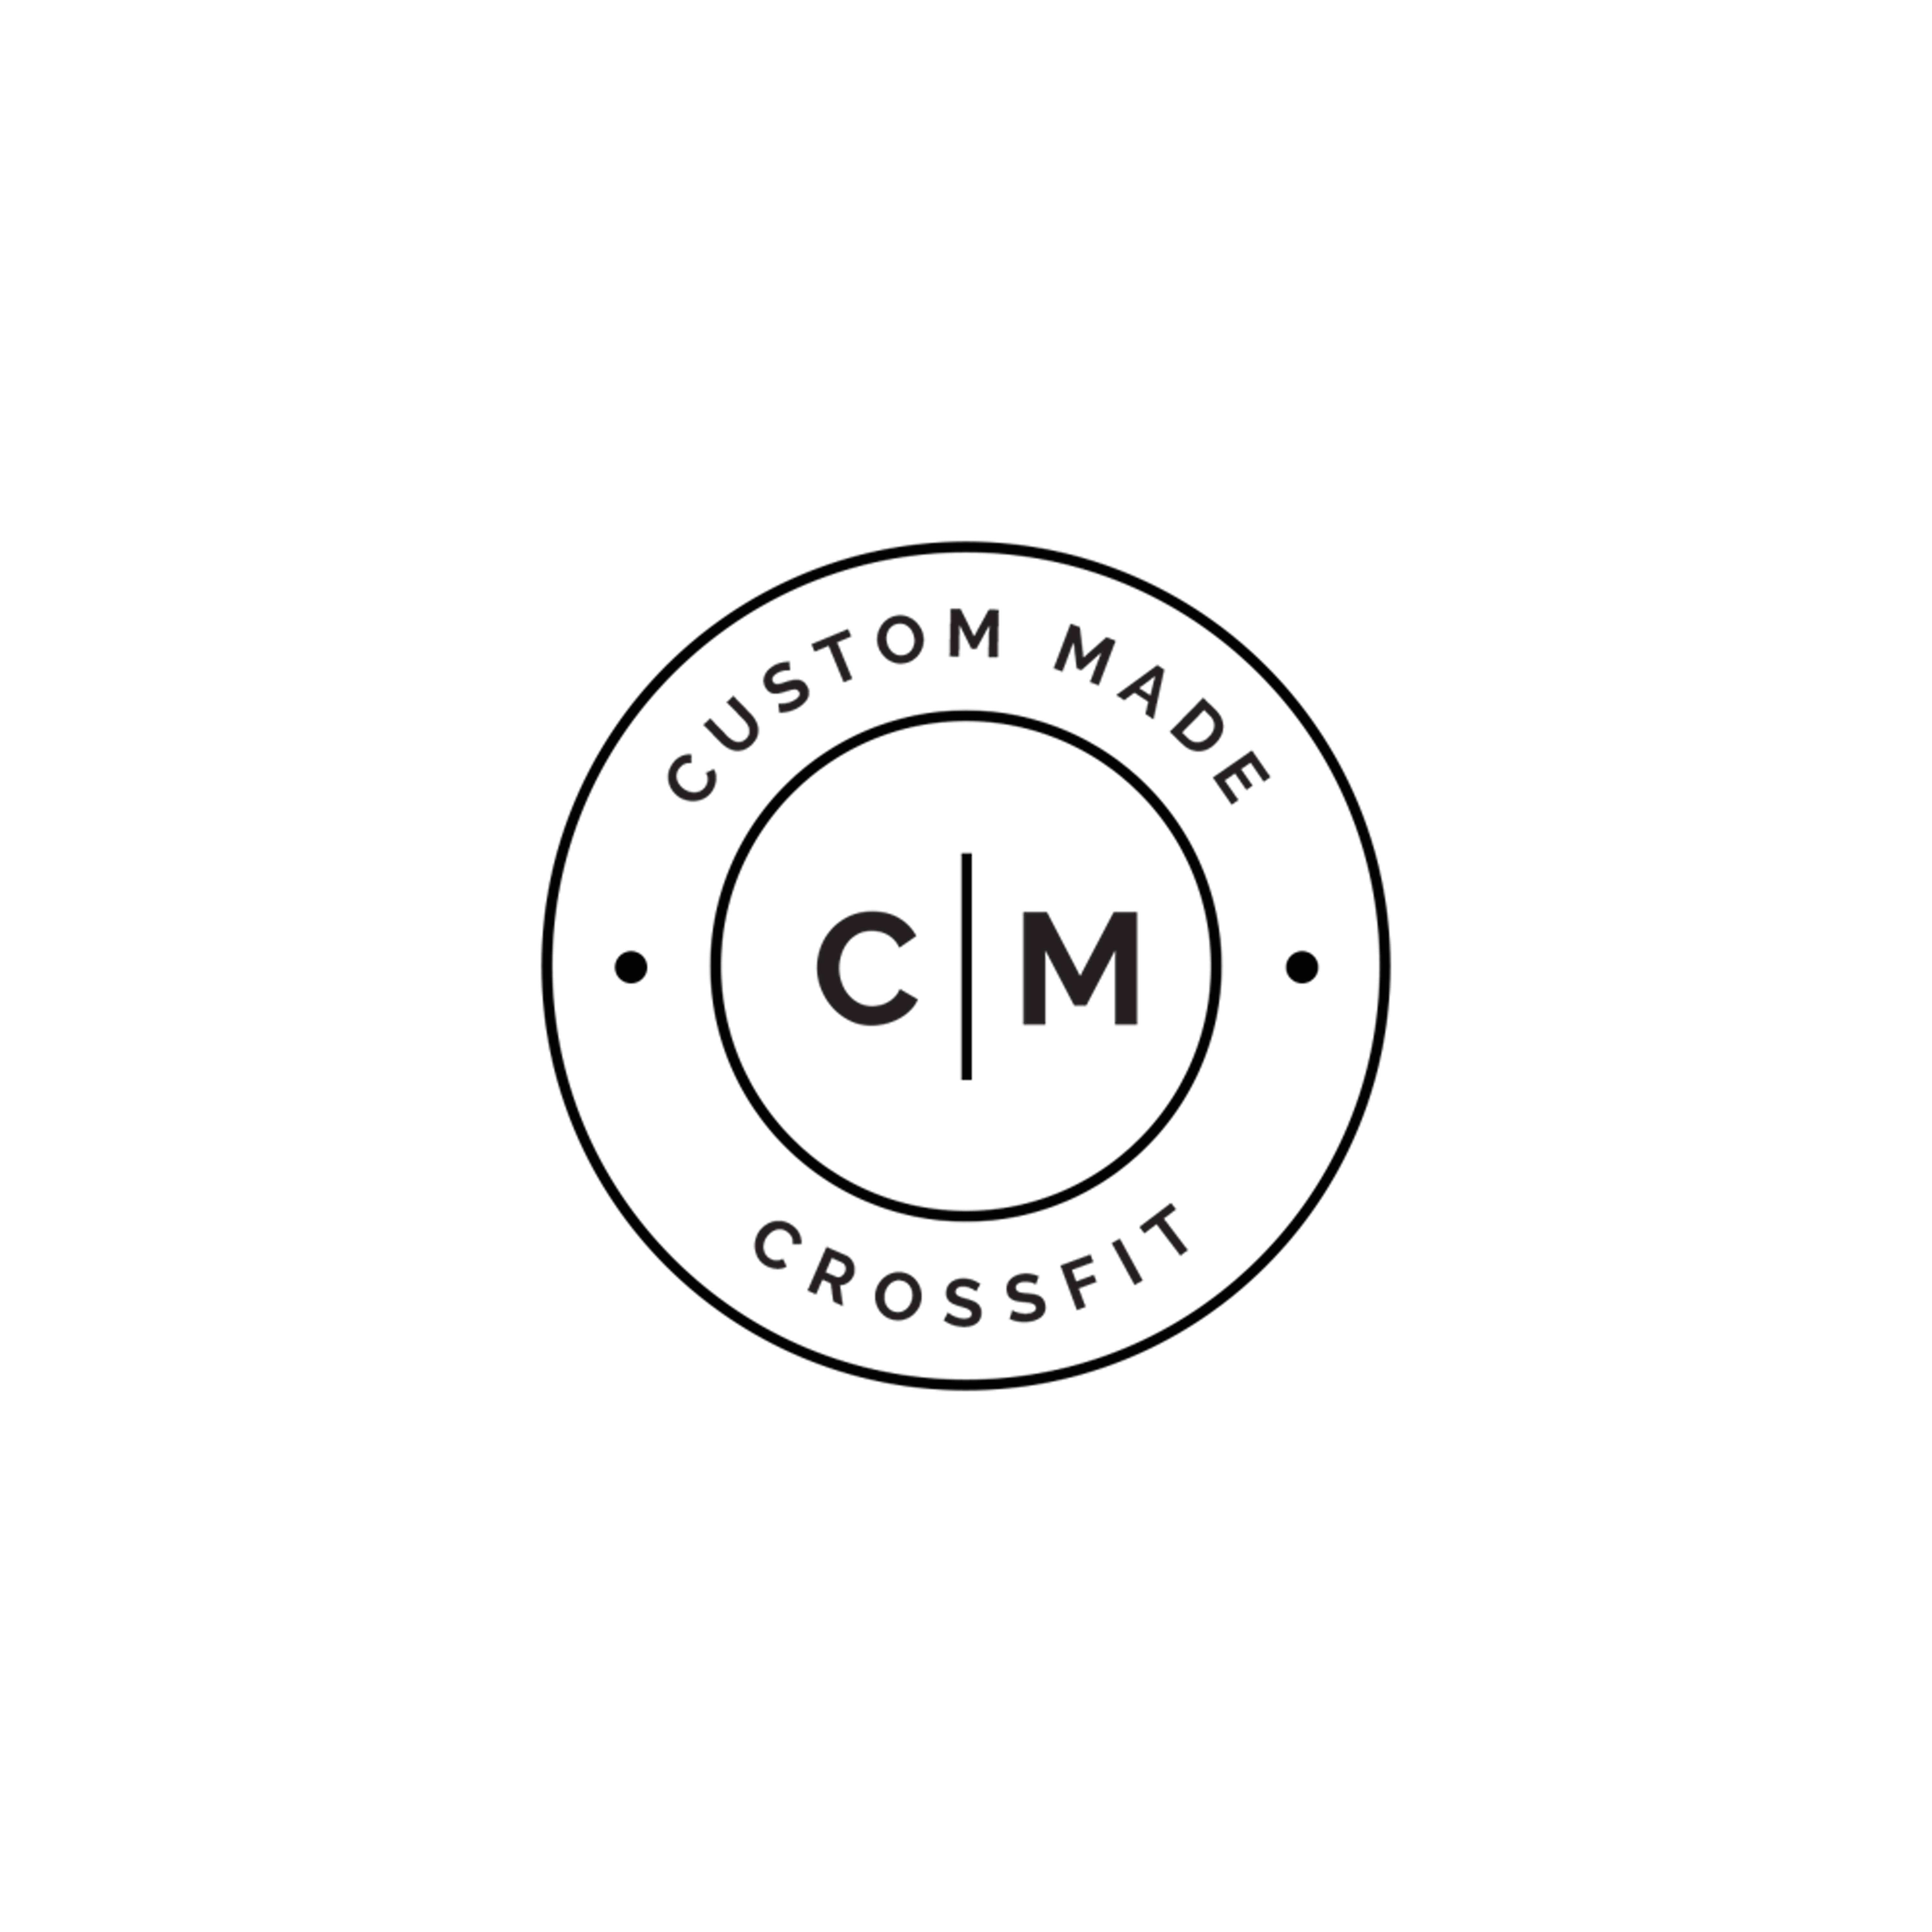 Custom Made Logo - Home - CUSTOM MADE CROSSFIT